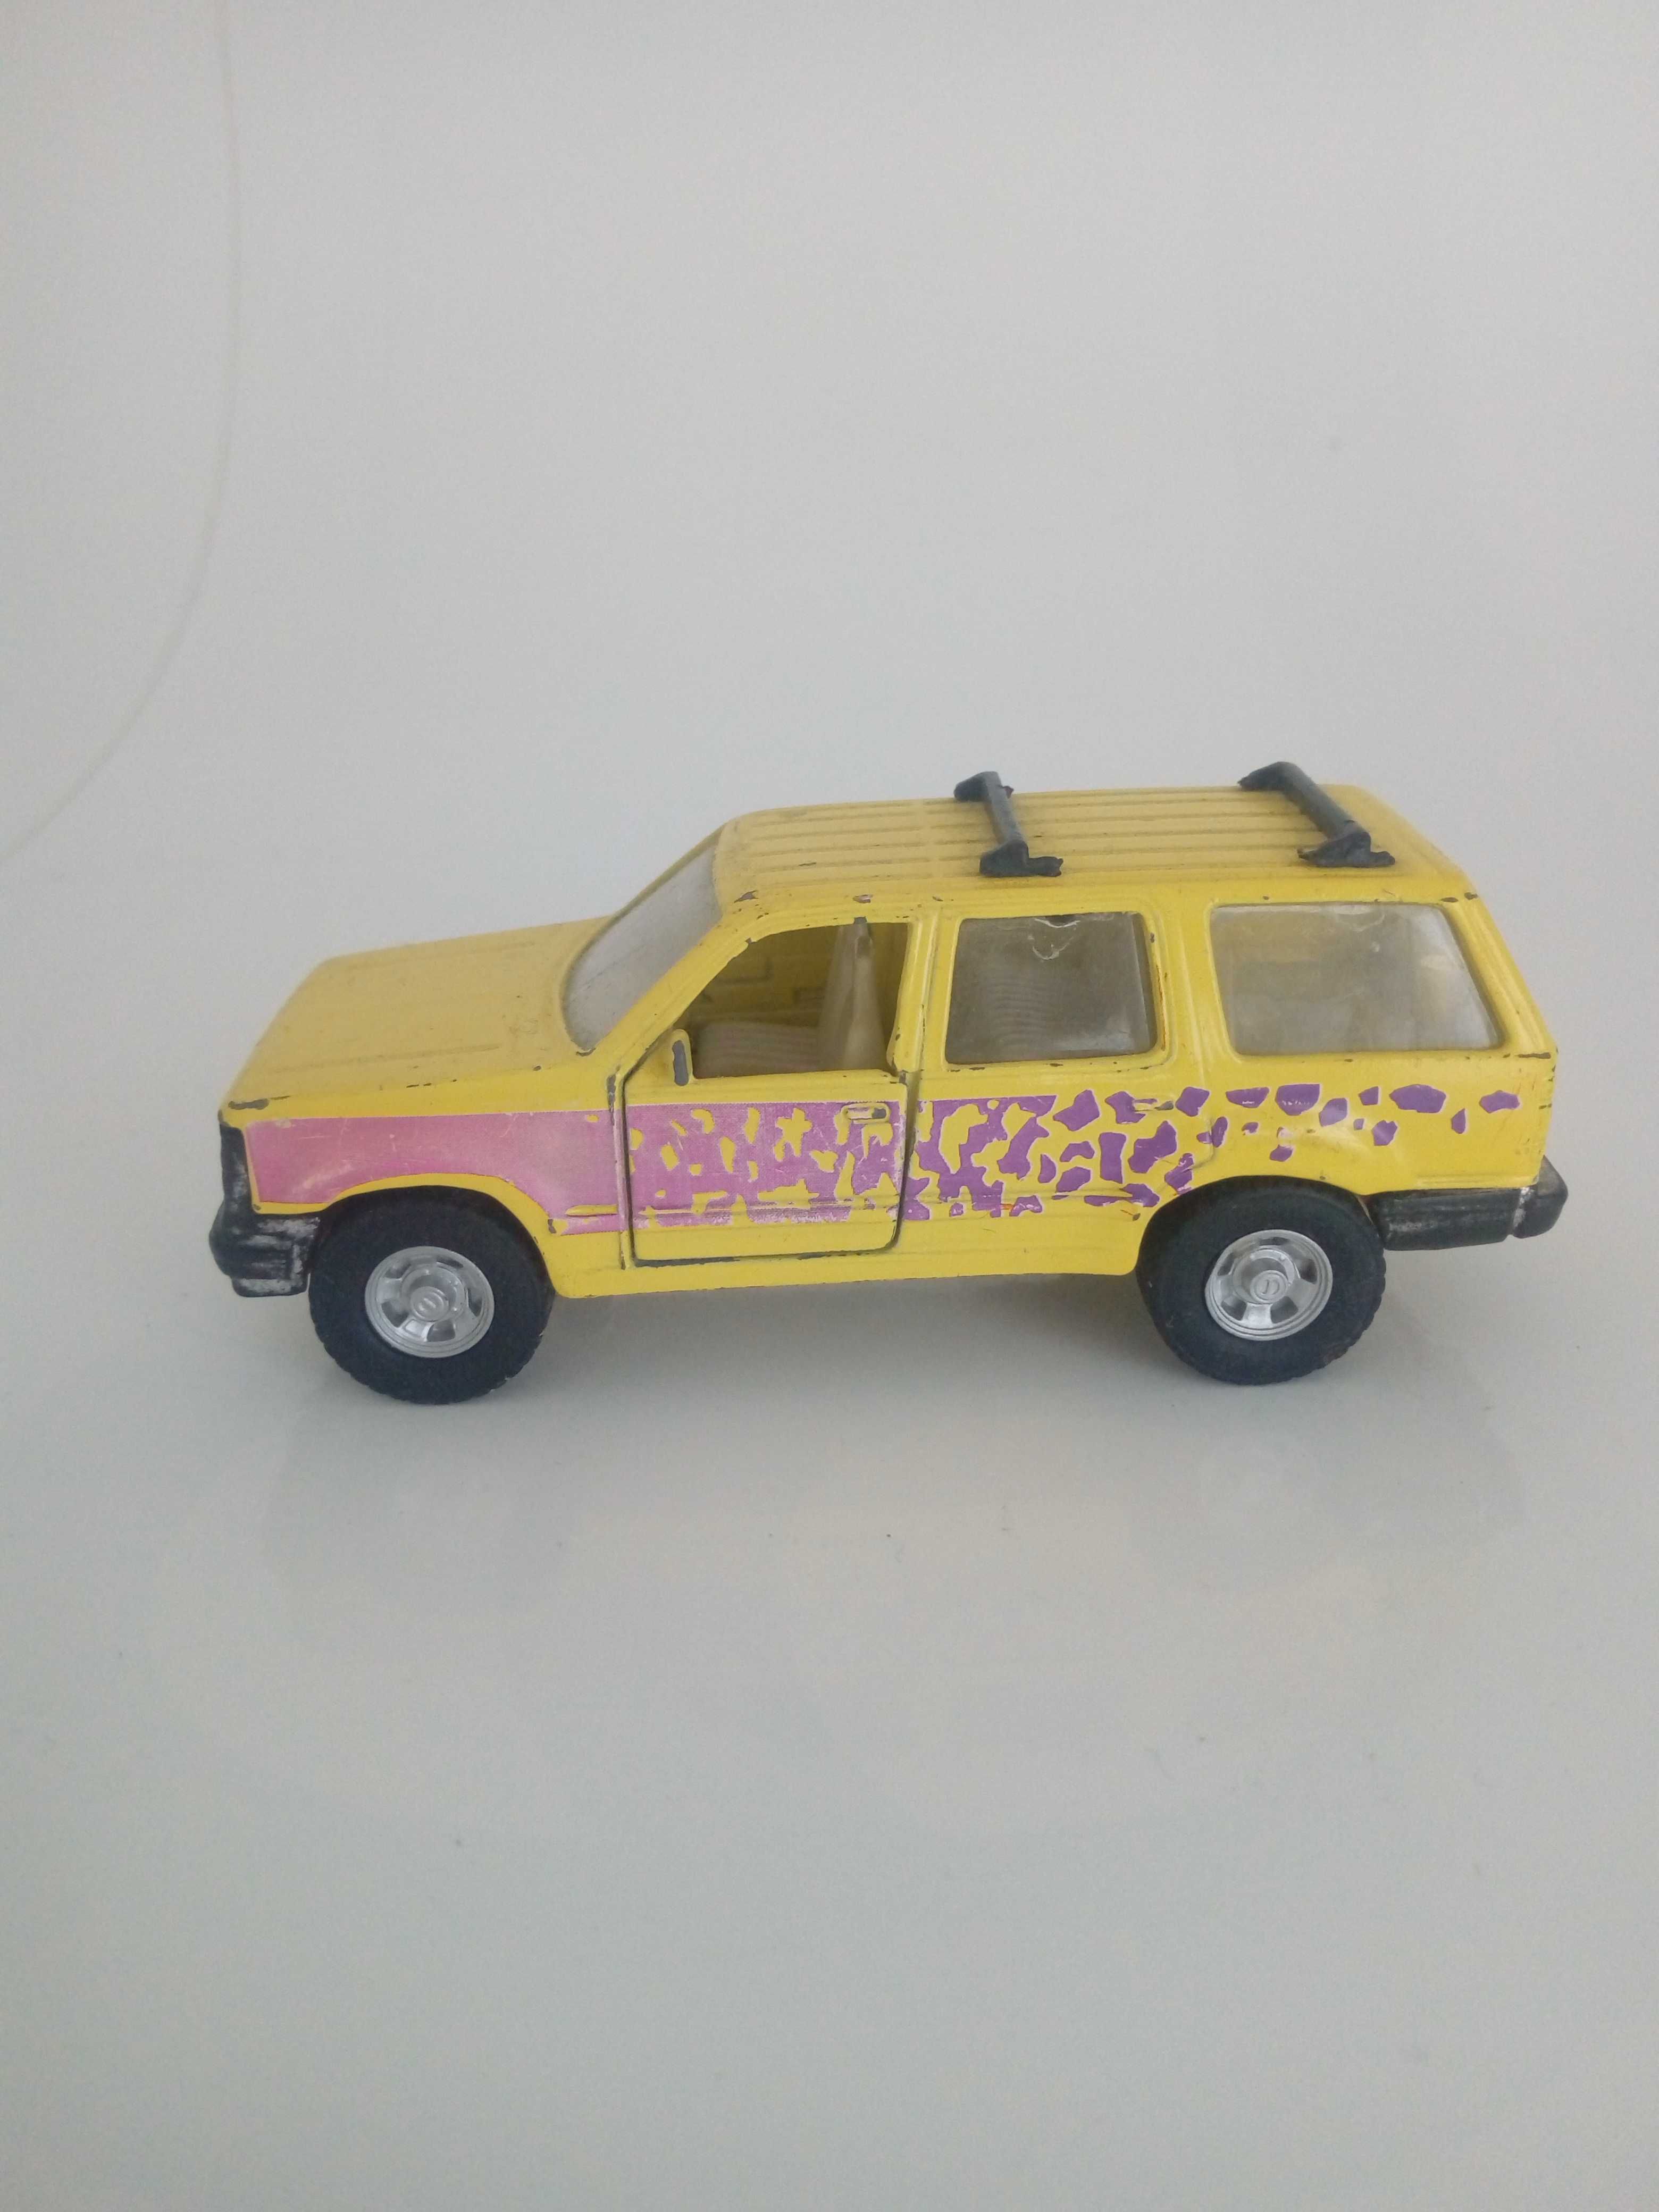 Carros miniatura de coleção - Brincar